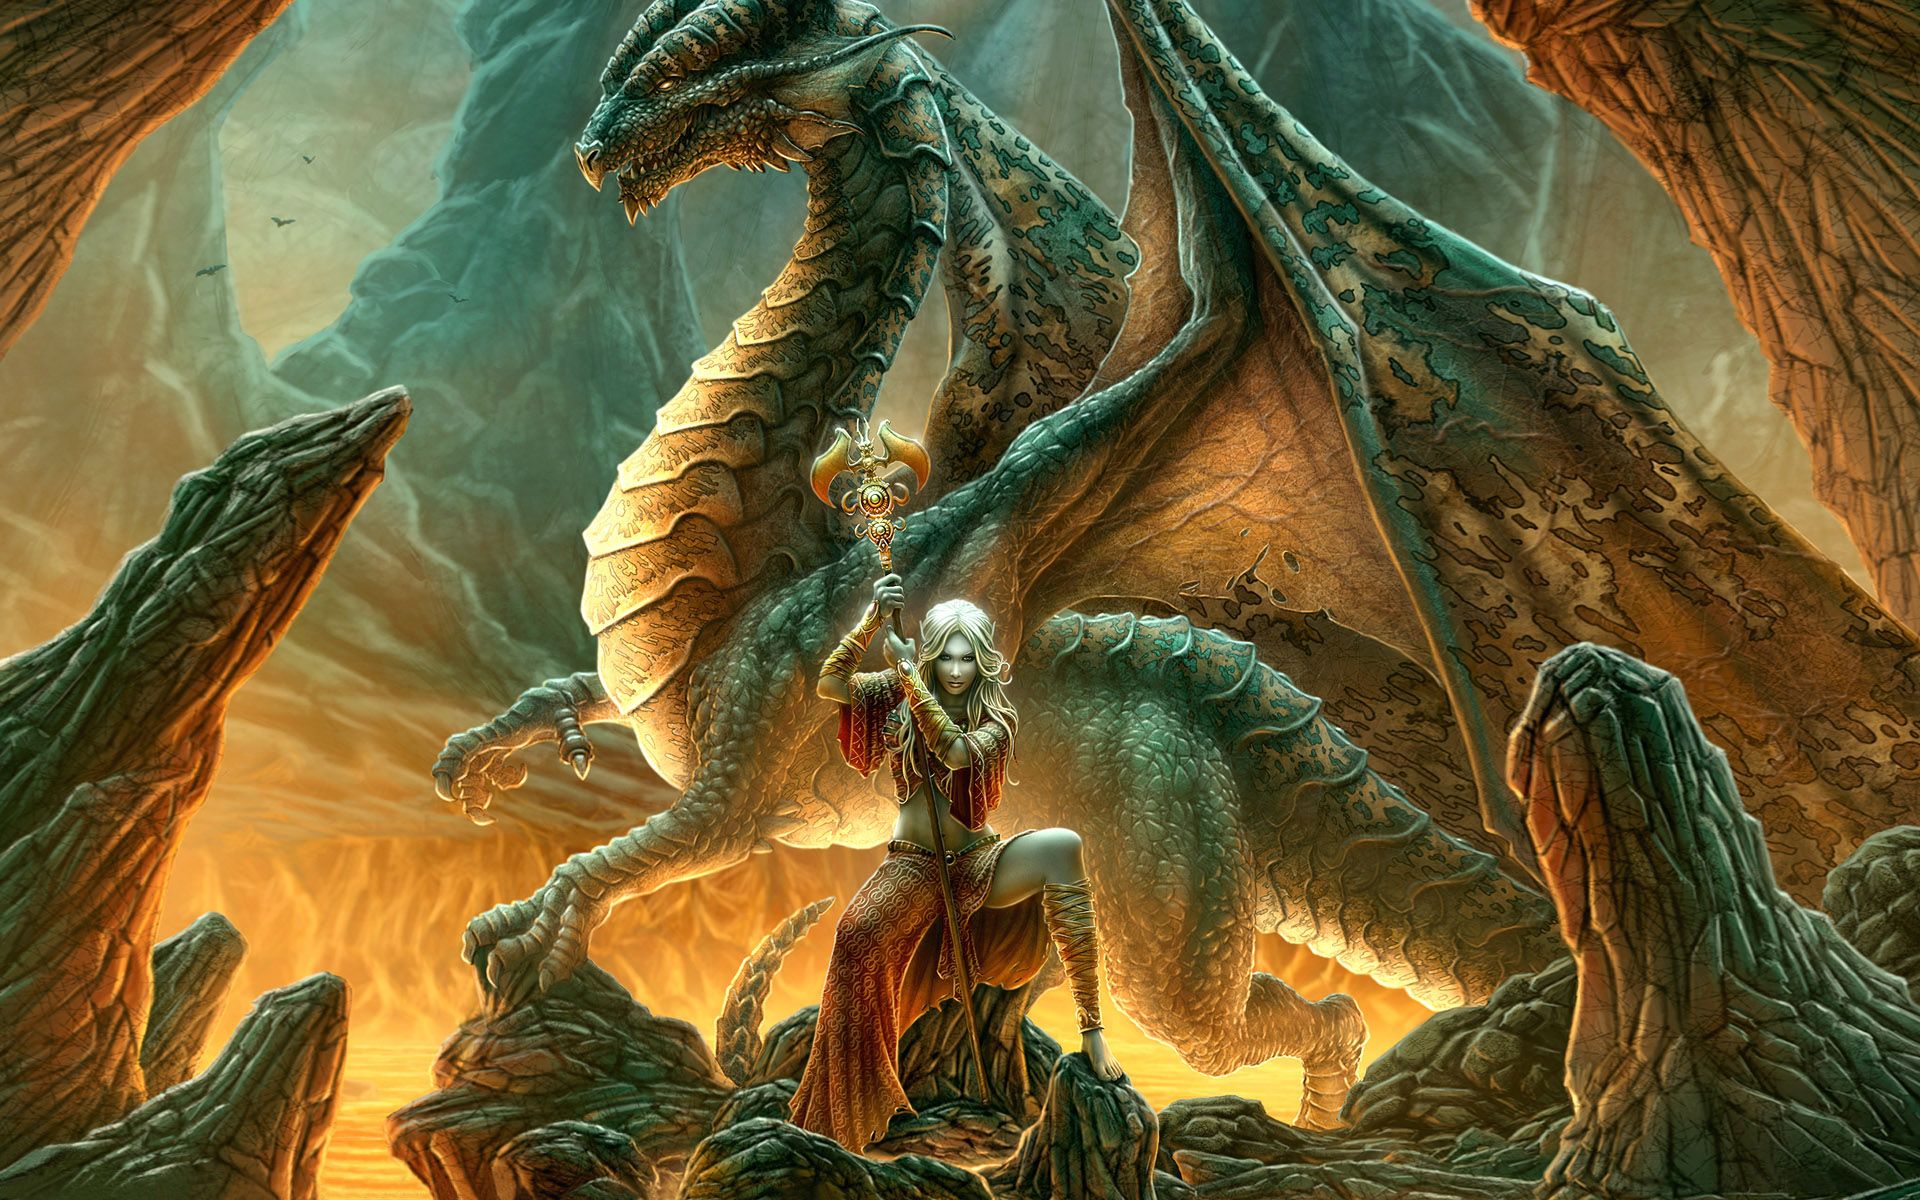 New Fantasy Pics Warrior Princess And Dragon